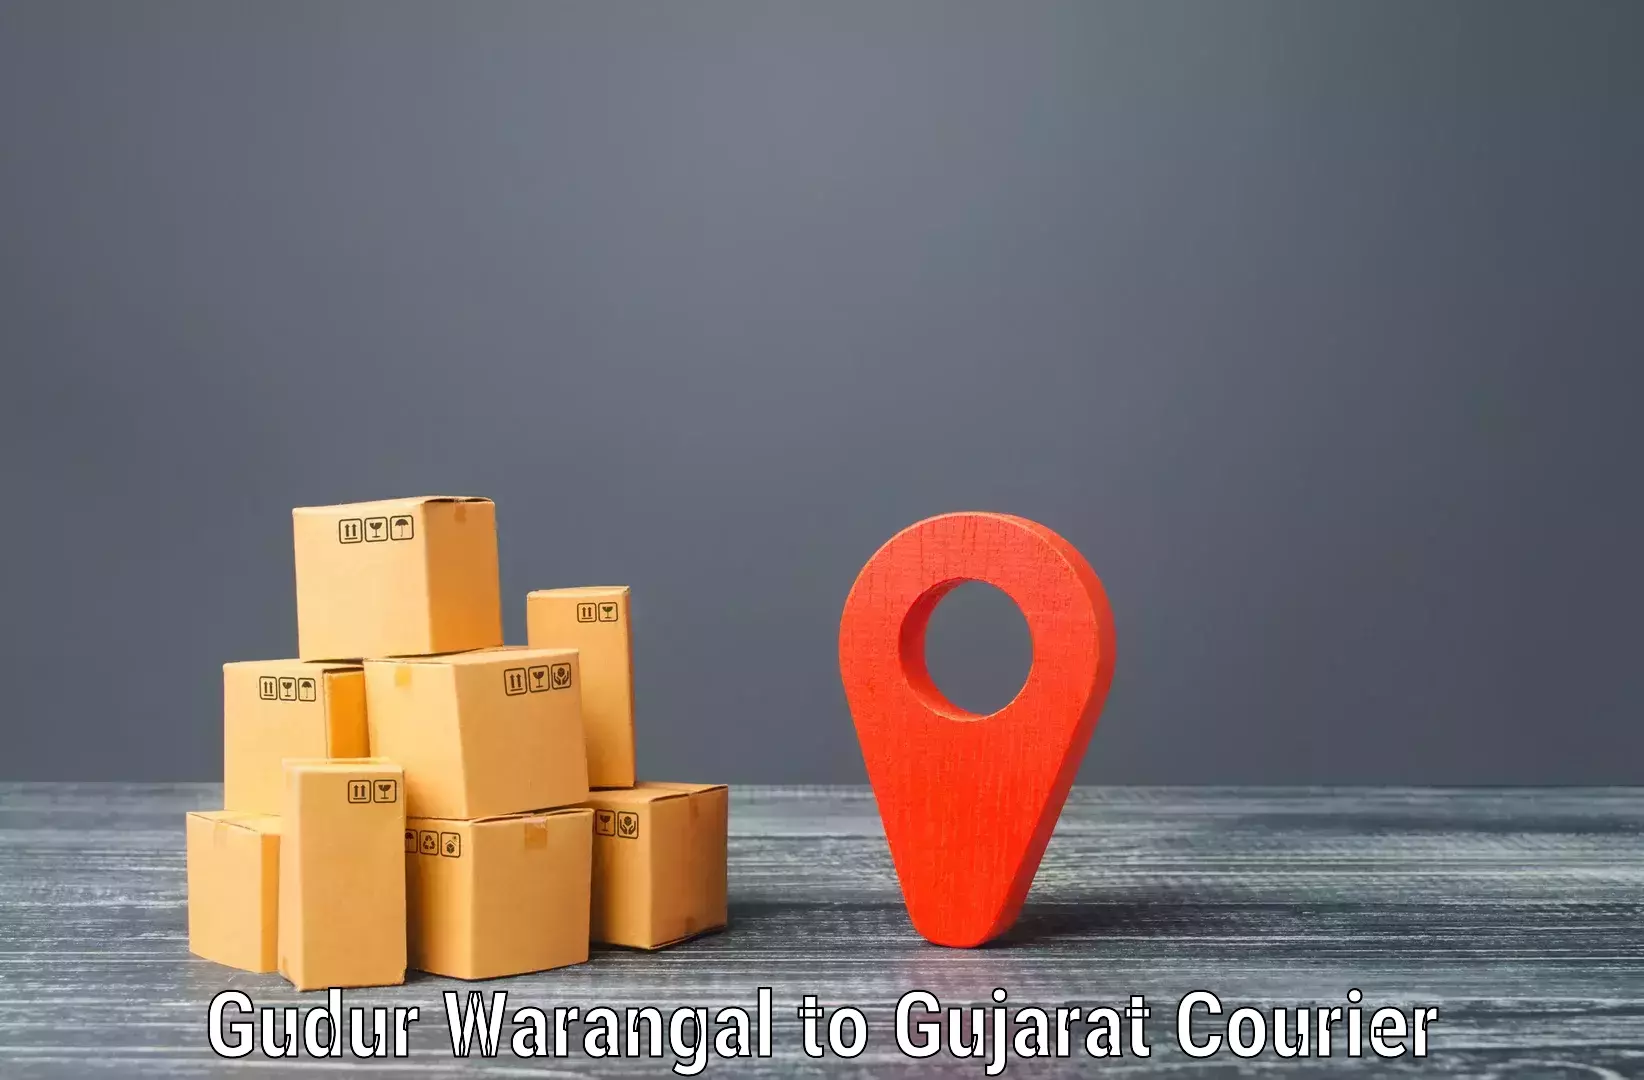 Versatile courier offerings Gudur Warangal to Bodeli